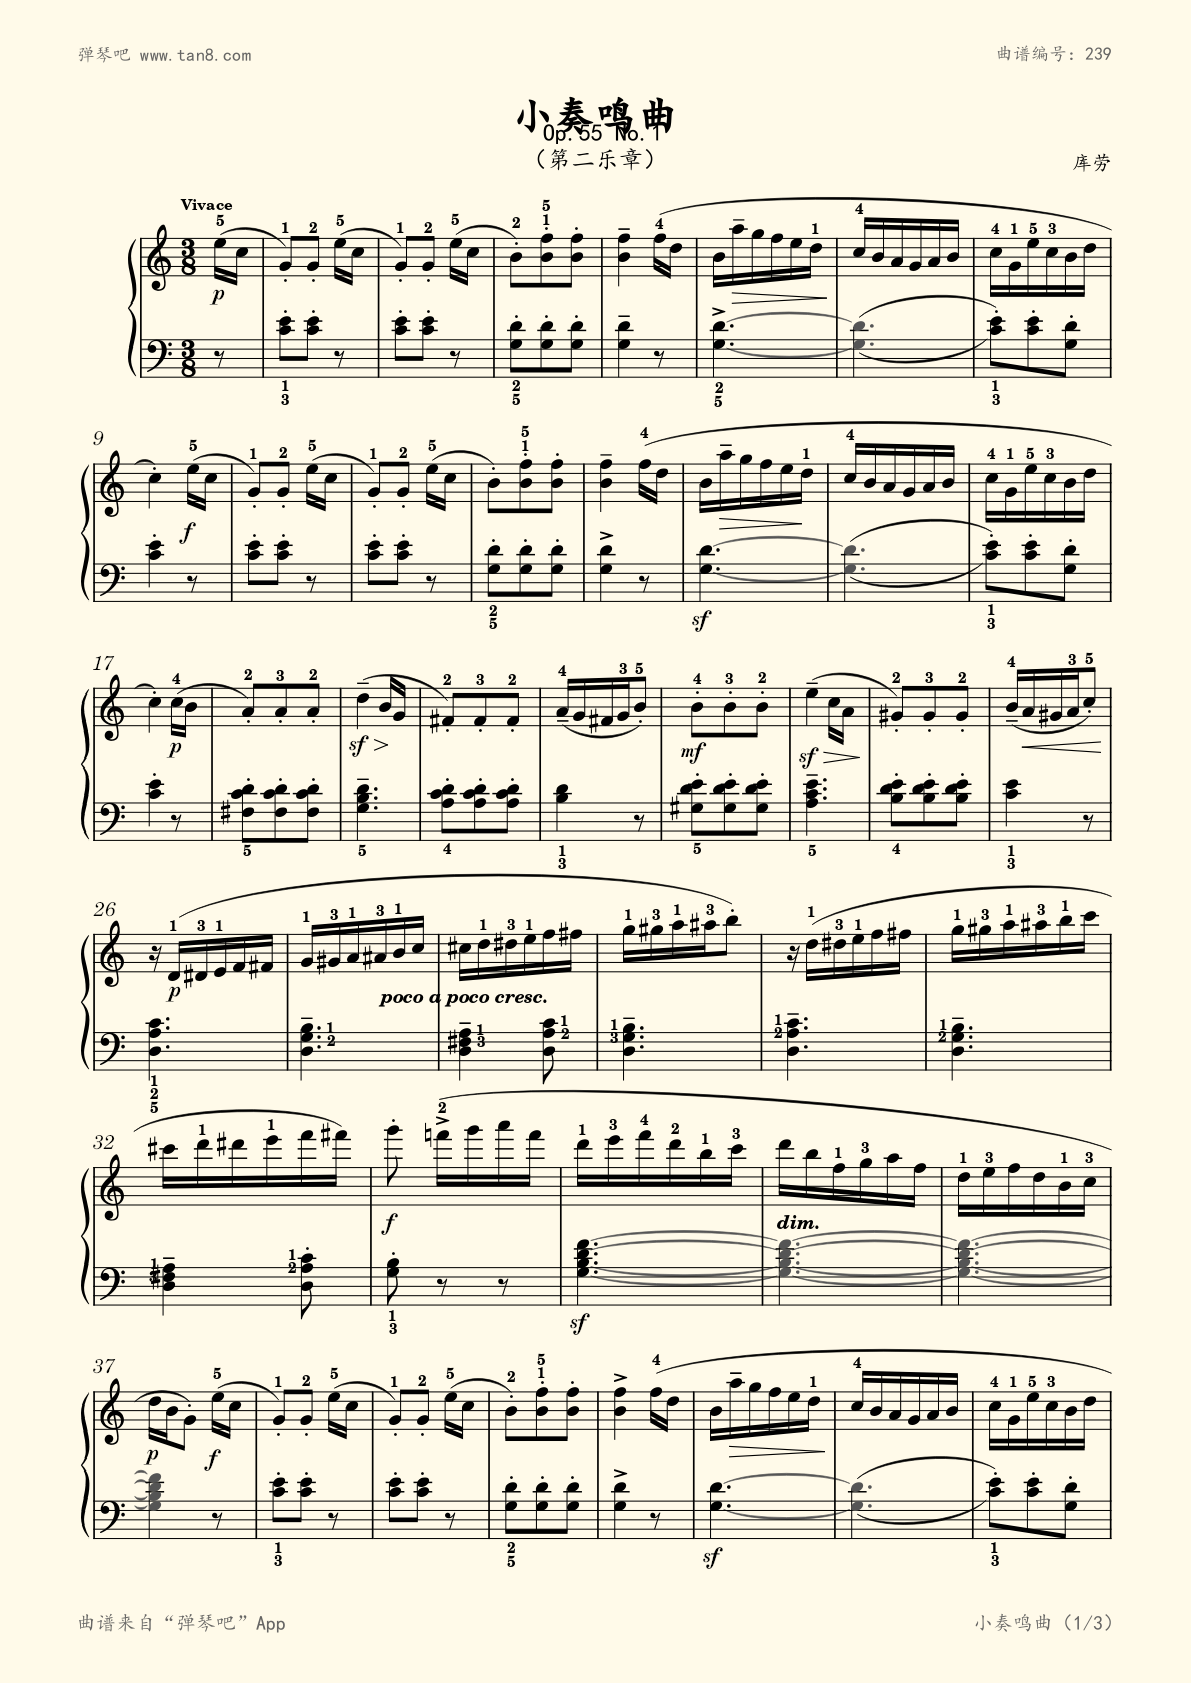 库劳-c大调钢琴小奏鸣曲(库劳-c大调钢琴小奏鸣曲 op.55 no.2)图片